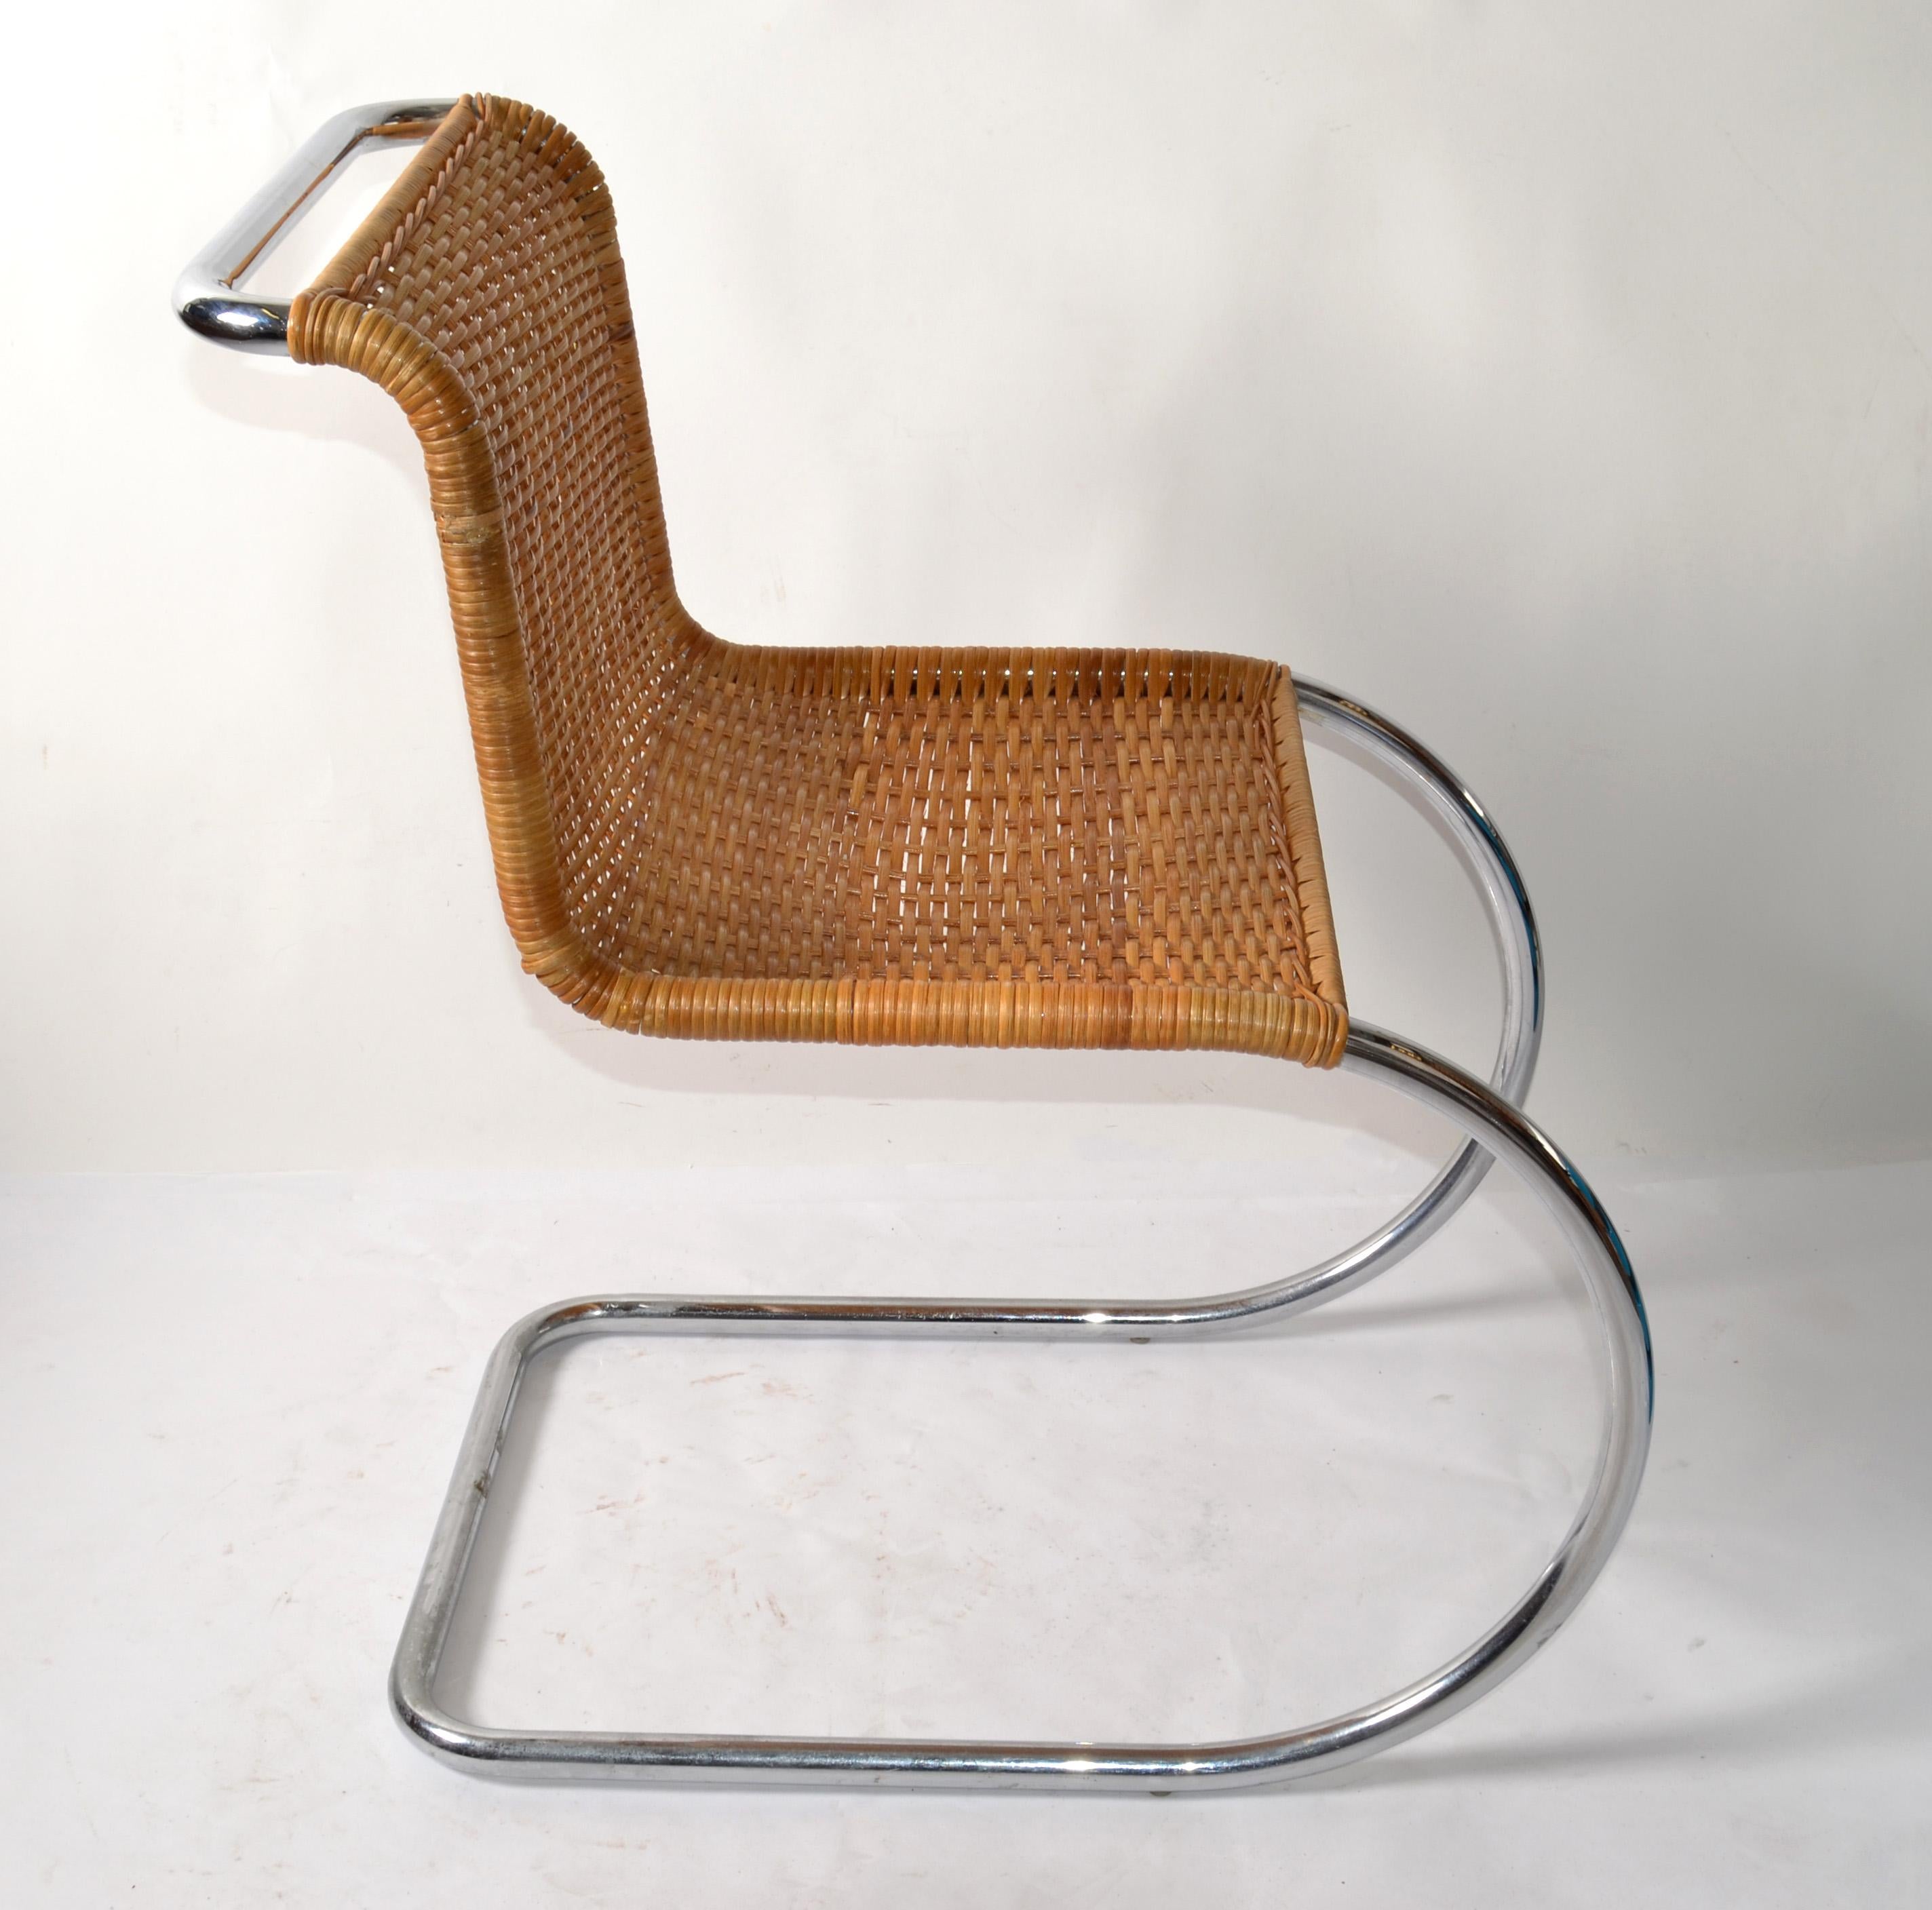 Ludwig Mies van der Rohe zugeschriebener Mr Chair armless Cantilever Side Chair in Chrom Finish mit dem original handgeflochtenen Cane Seat, der Knoll zugeschrieben wird.
Die MR Collection'S repräsentiert einige der frühesten Stahlmöbelentwürfe von